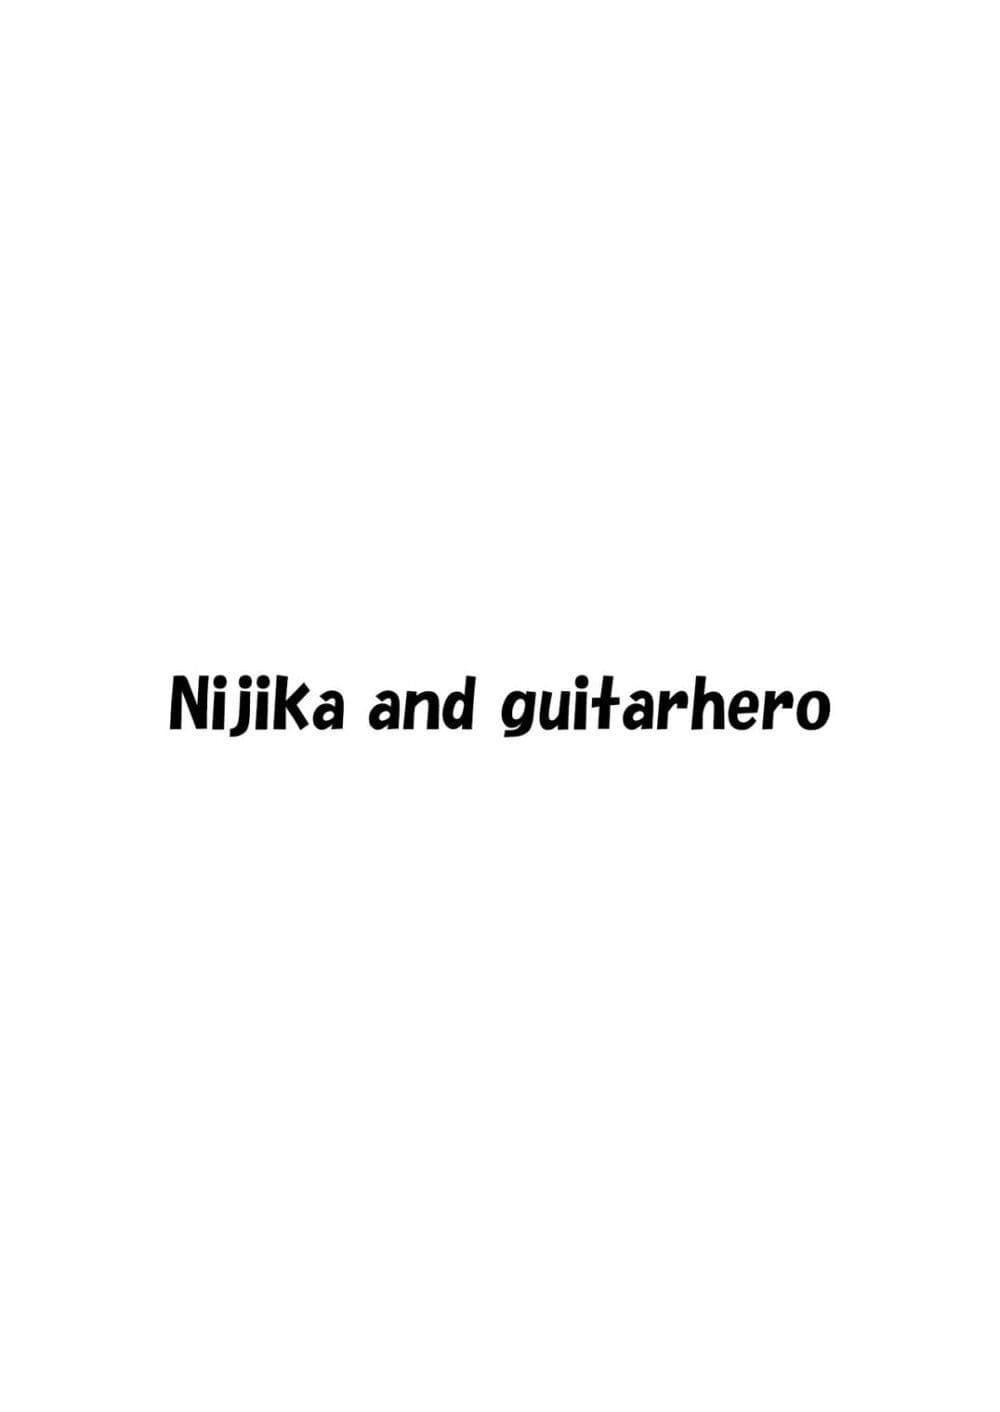 Nijika and guitarhero 1 02